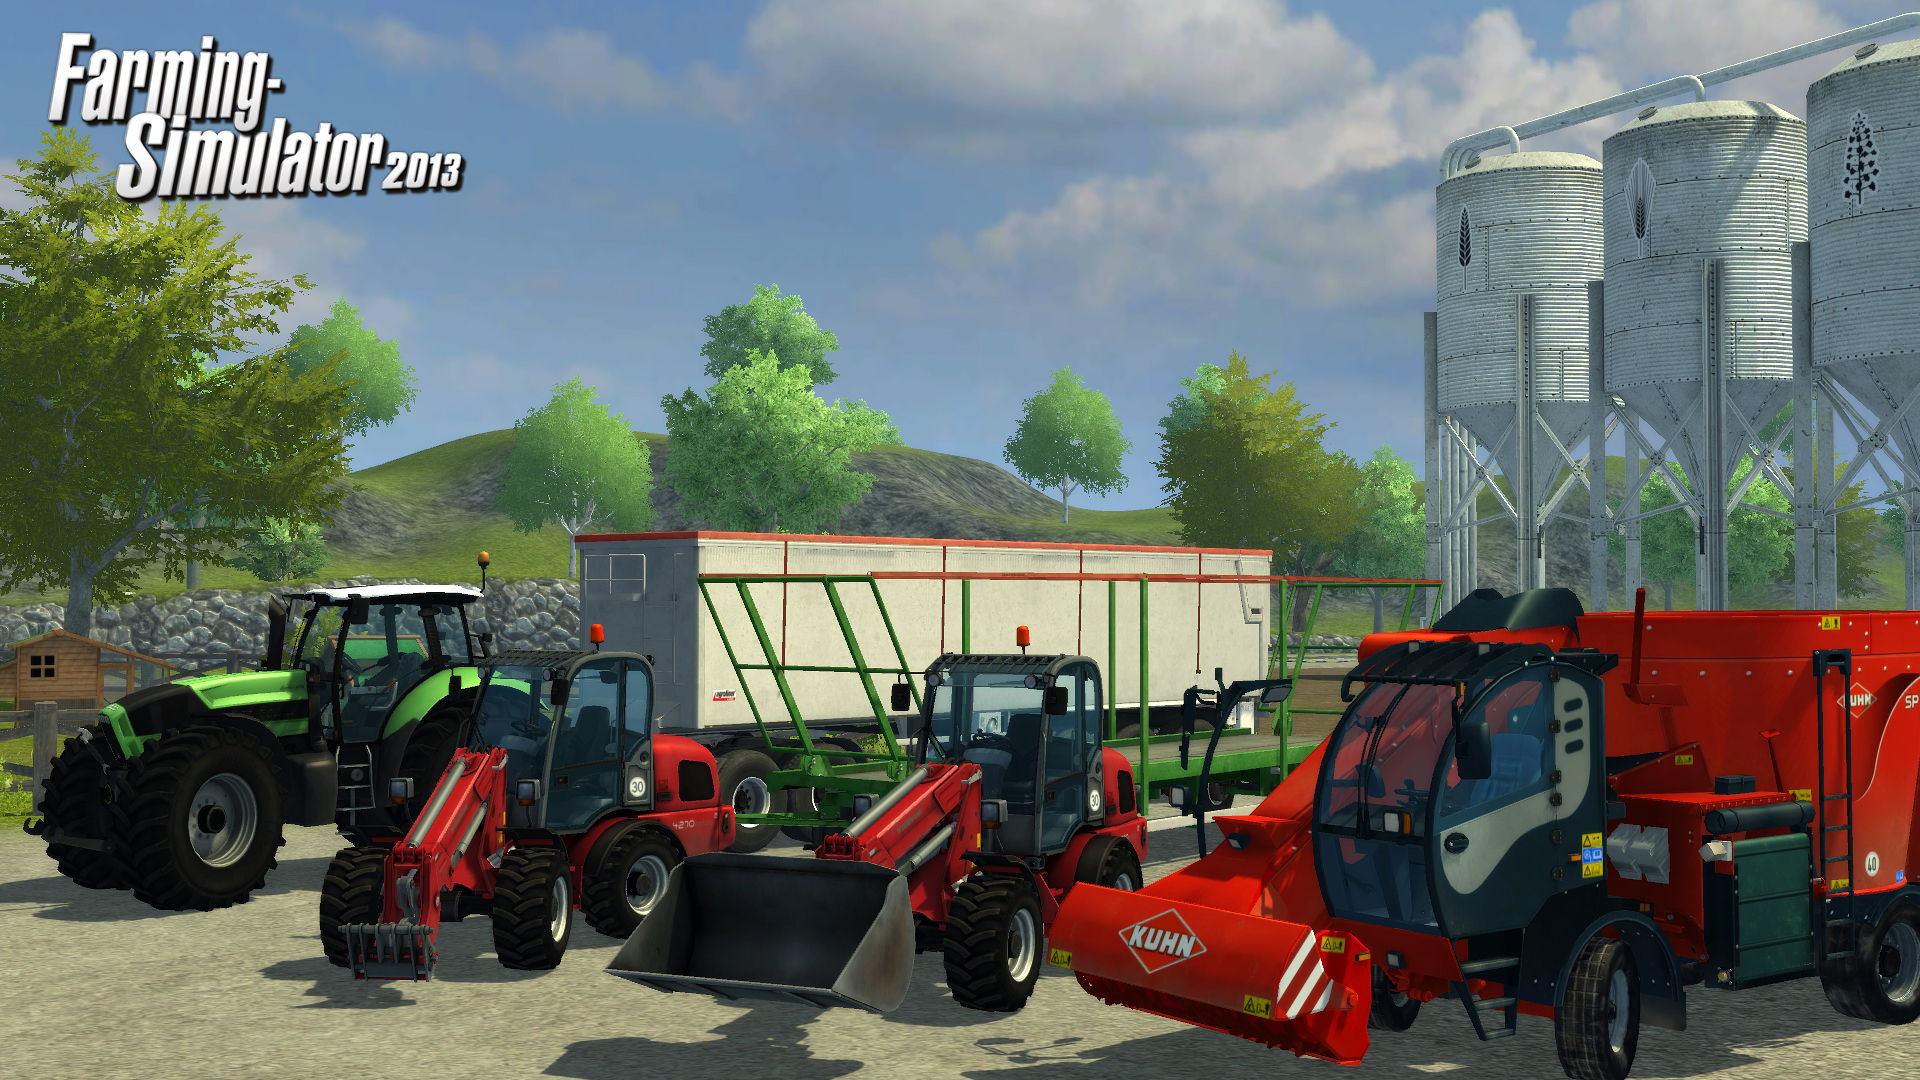 Farming Simulator 2013 obiettivi e trofei